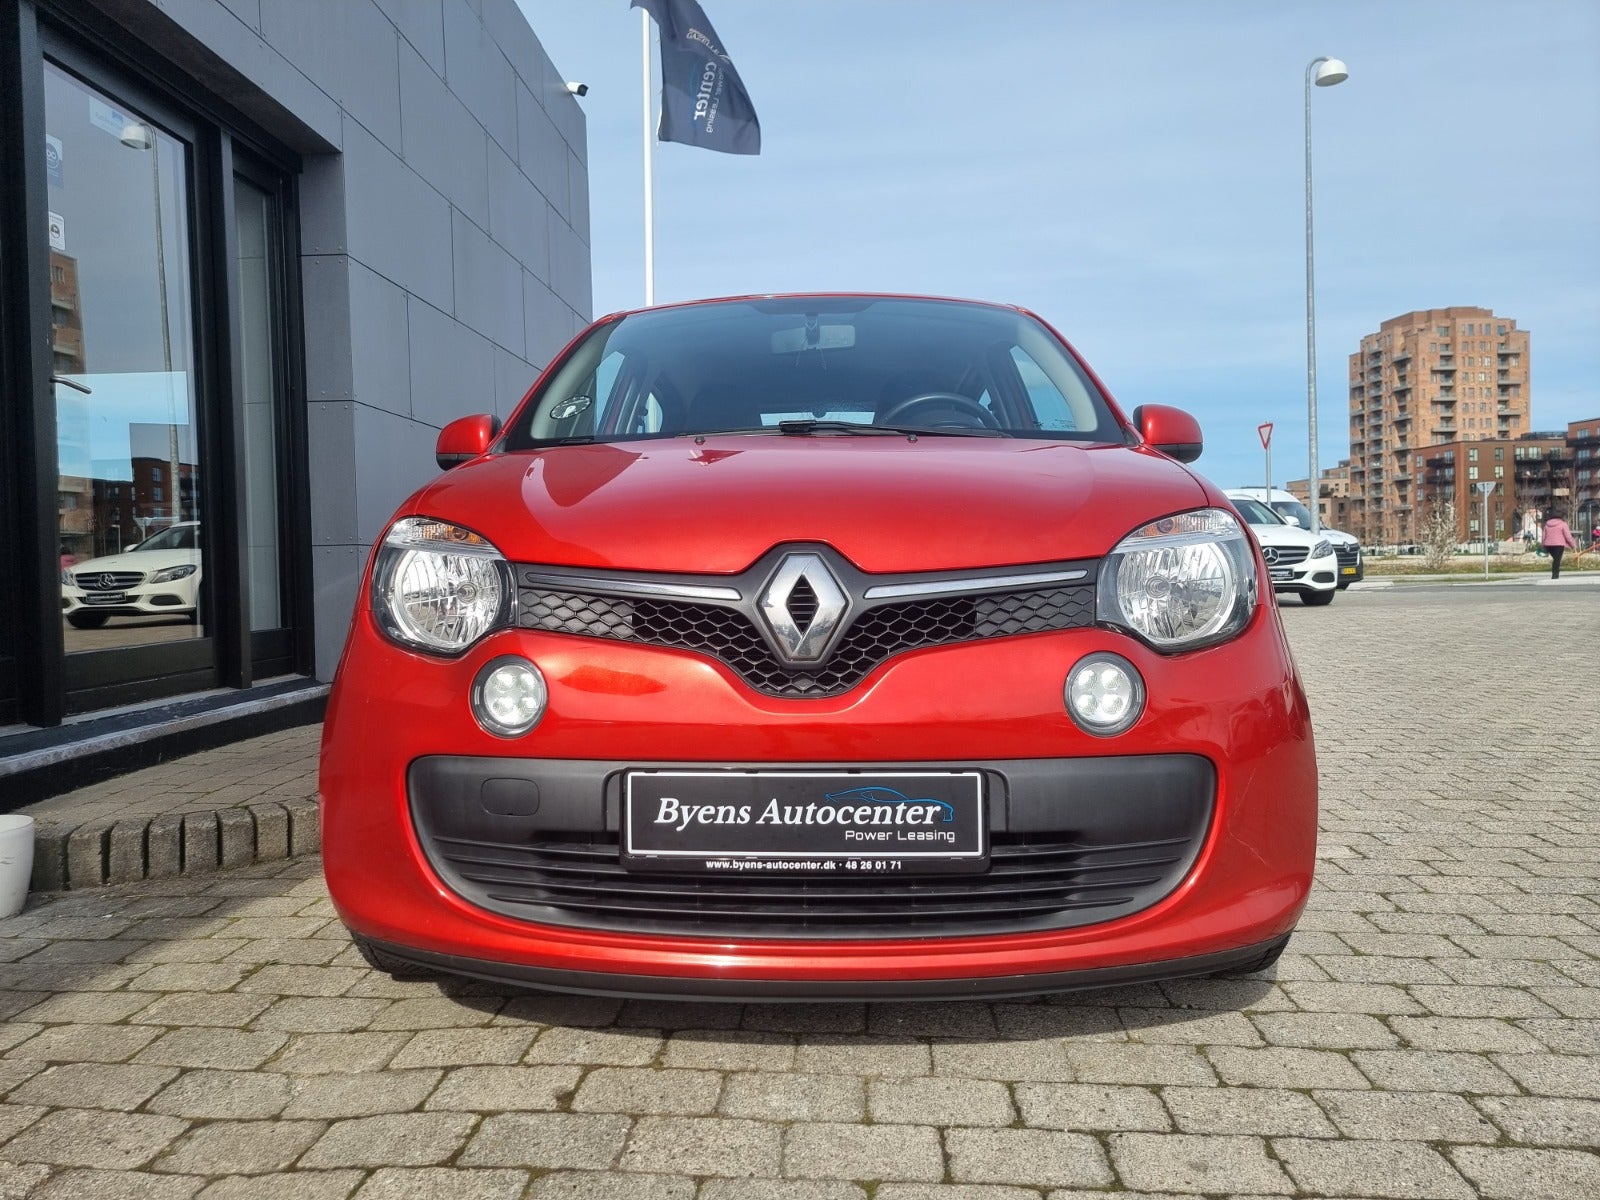 Renault Twingo 2015